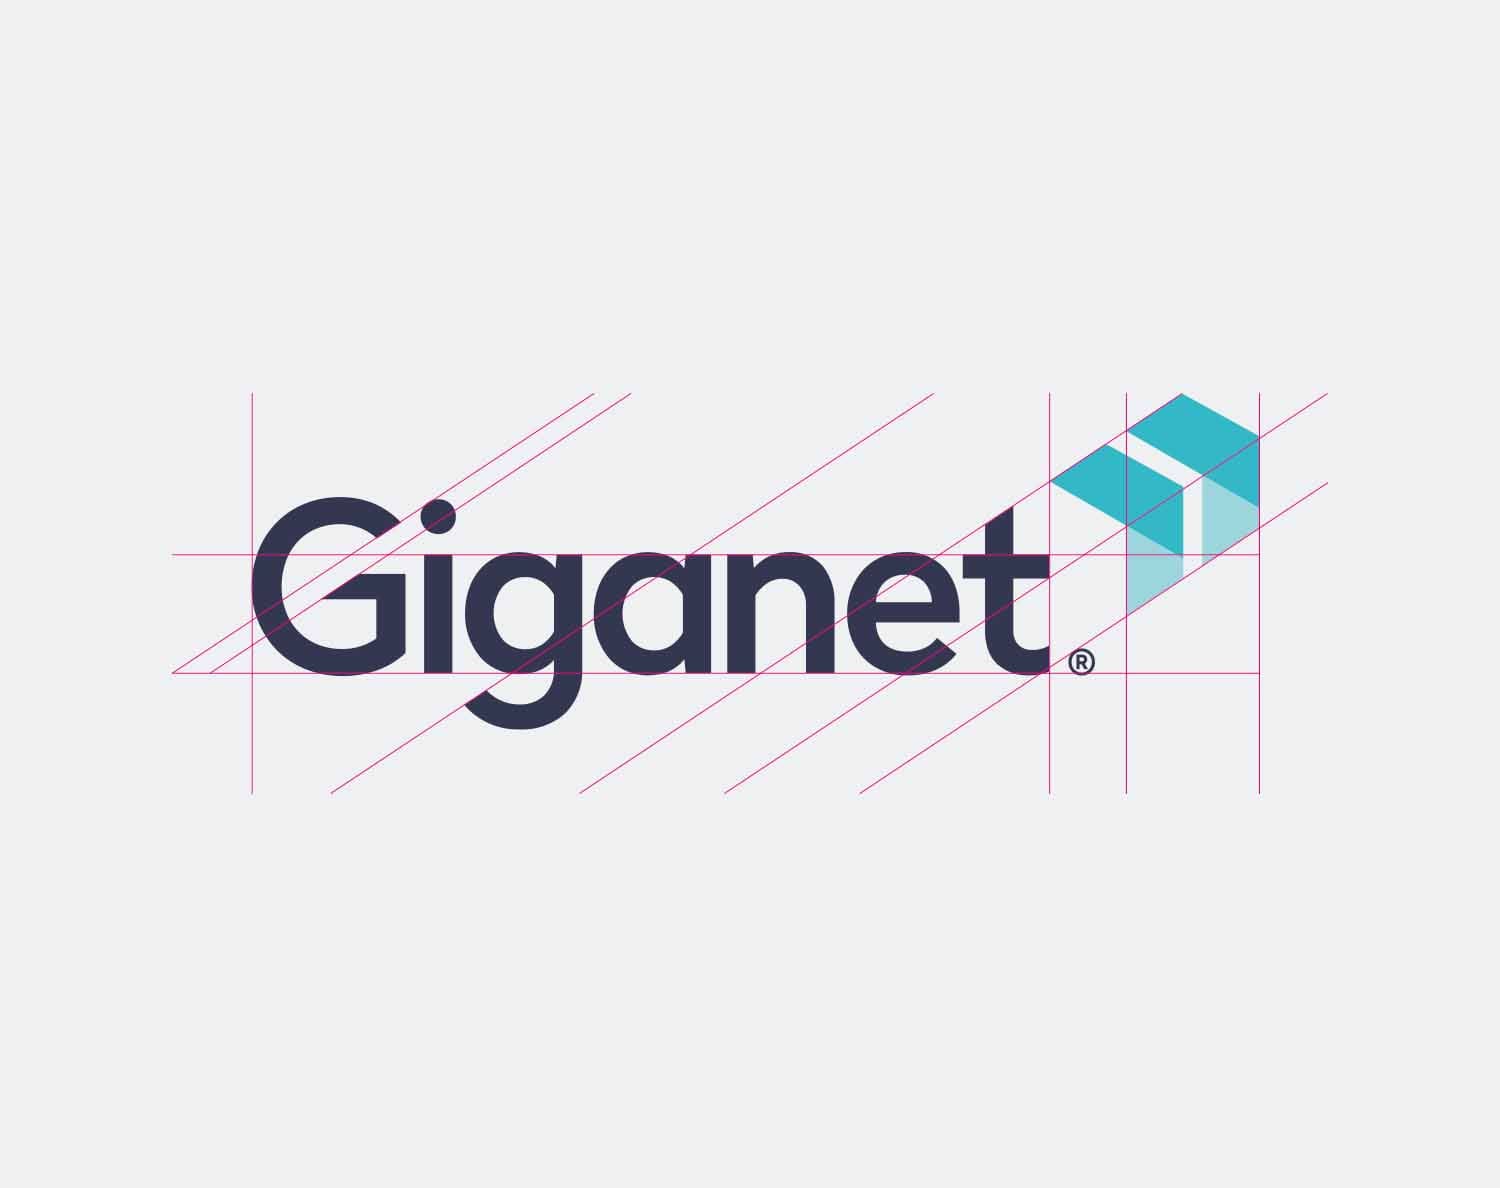 Logo design on a white background for Full Fibre provider Giganet